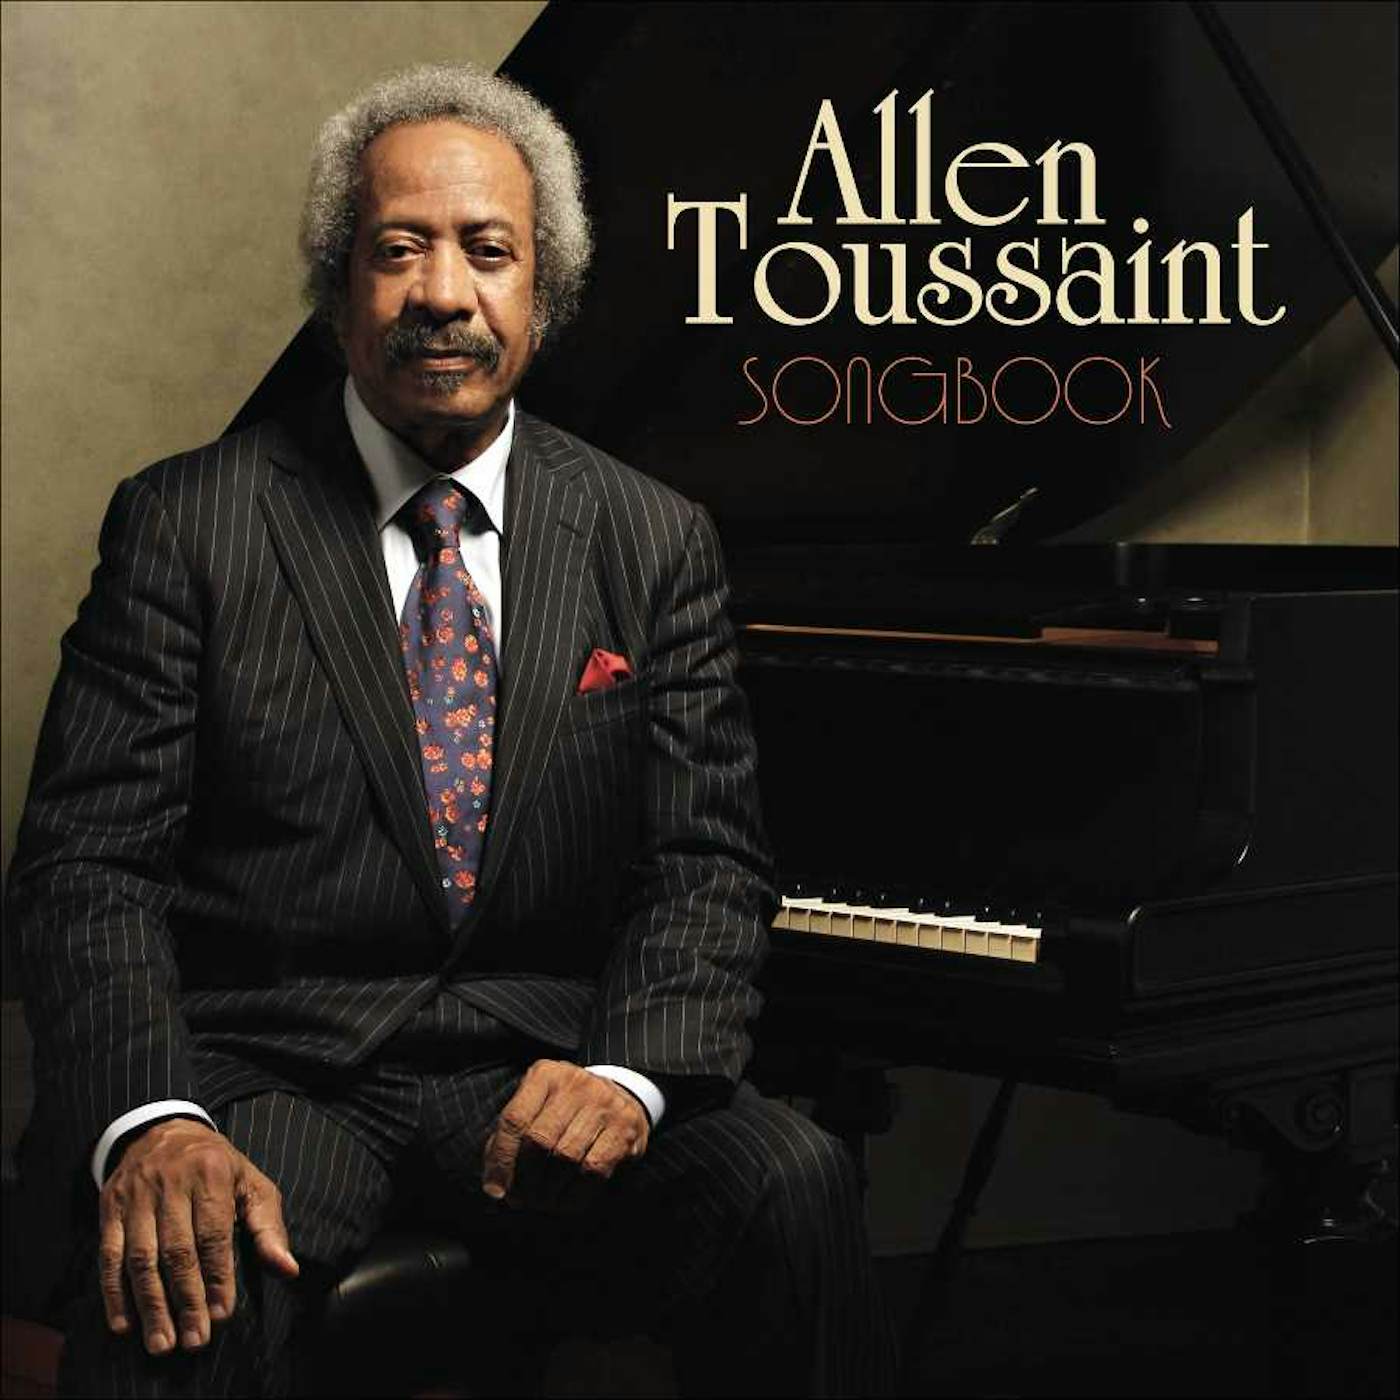 Allen Toussaint Songbook (CD/DVD Combo)(Deluxe Edition) CD